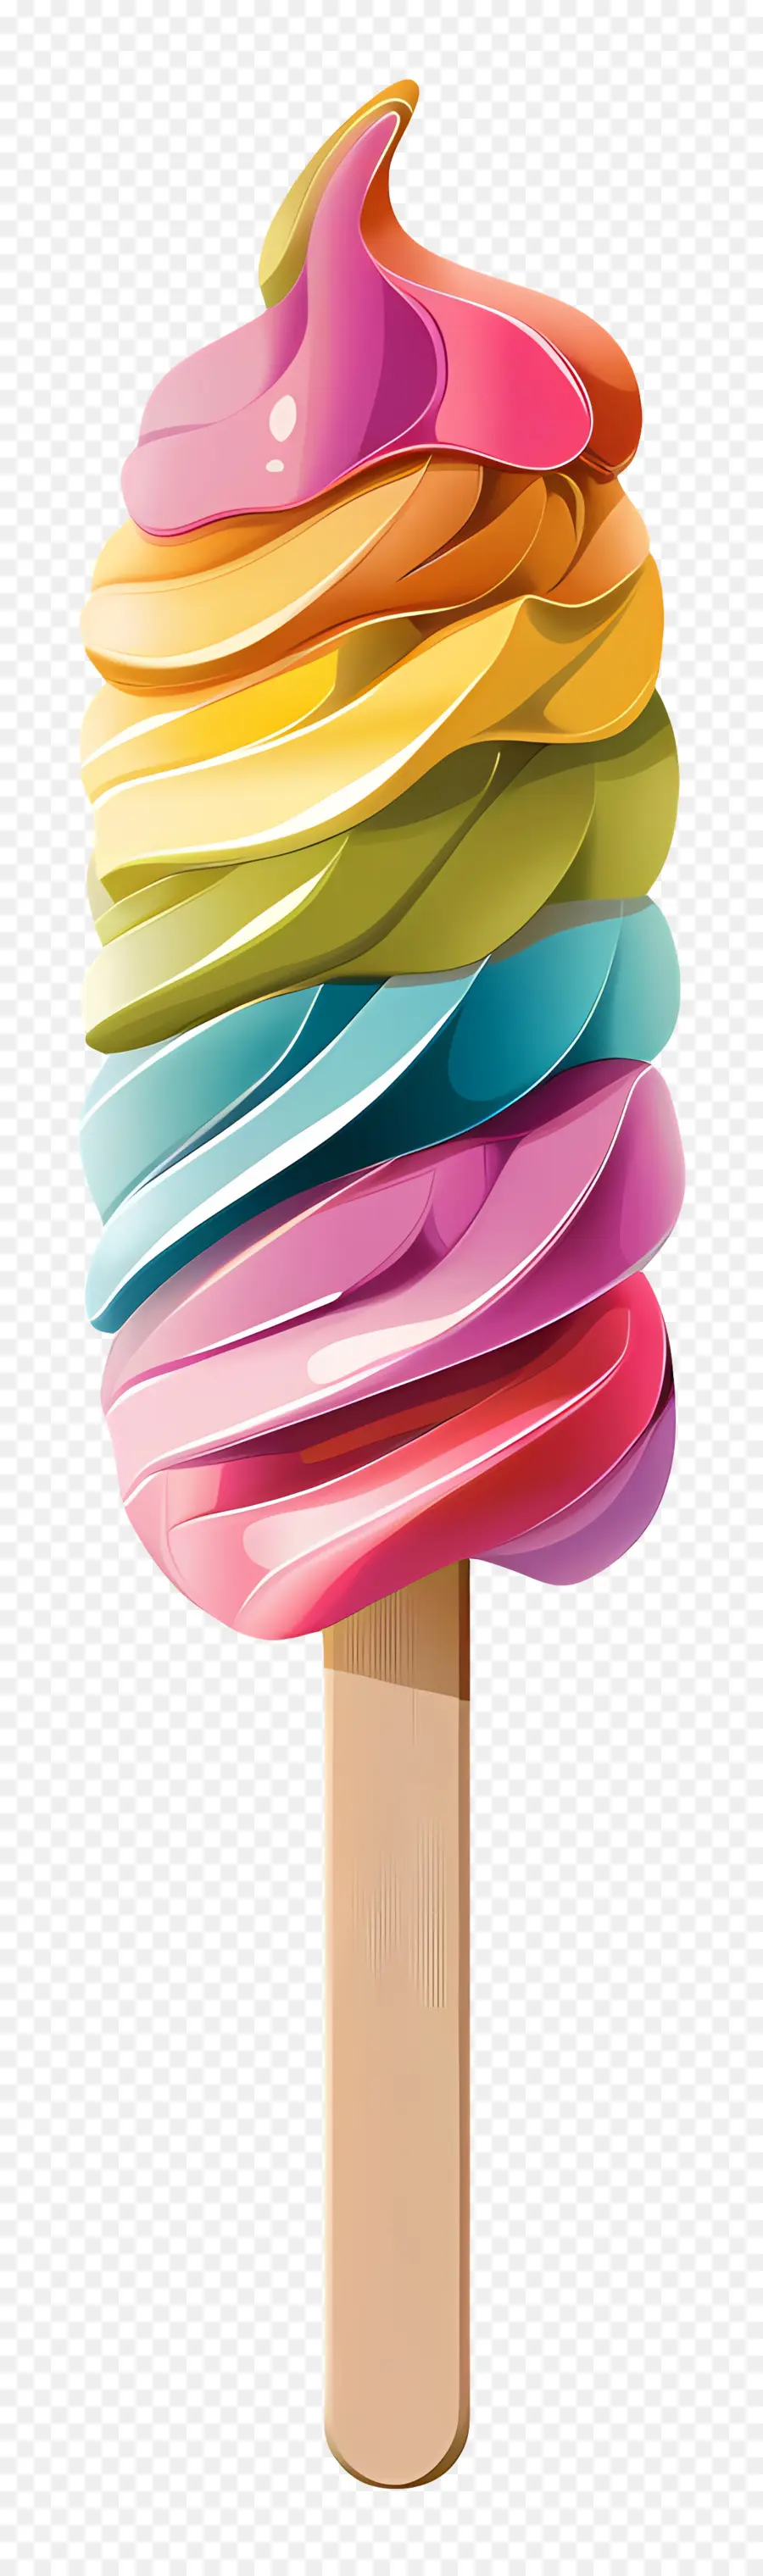 Eisstock Regenbogen Eis am Stiel geschwirrte Glasur bunte Dessert Eiscreme -Genuss - Regenbogen Eis am Stiel mit geschwungenen Glasfarbfarben